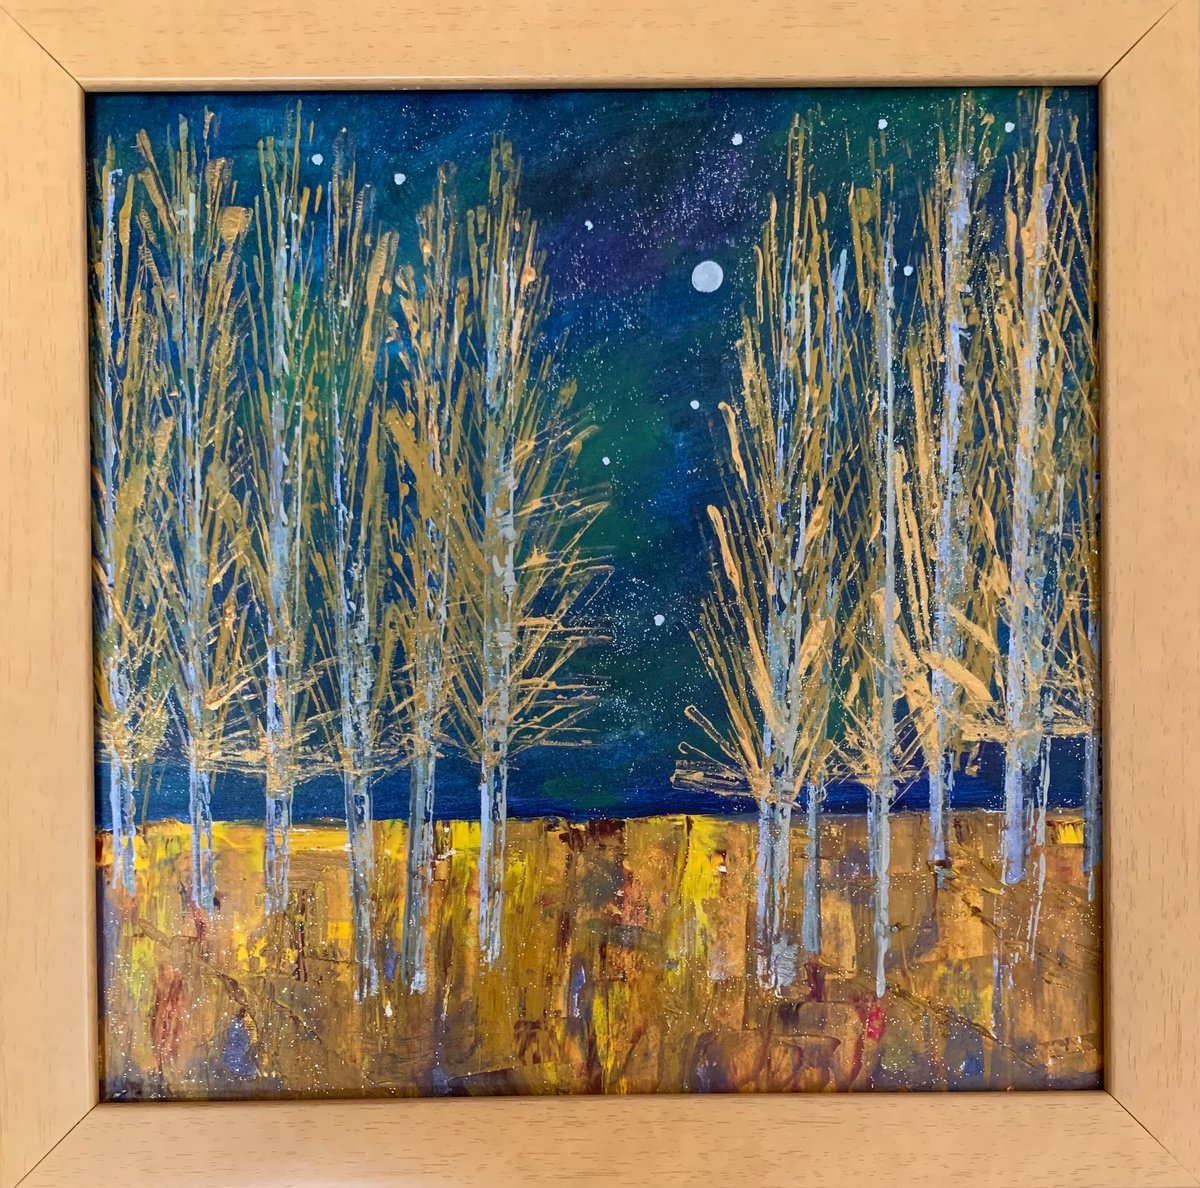 Midnight poplars by Sarah Gill